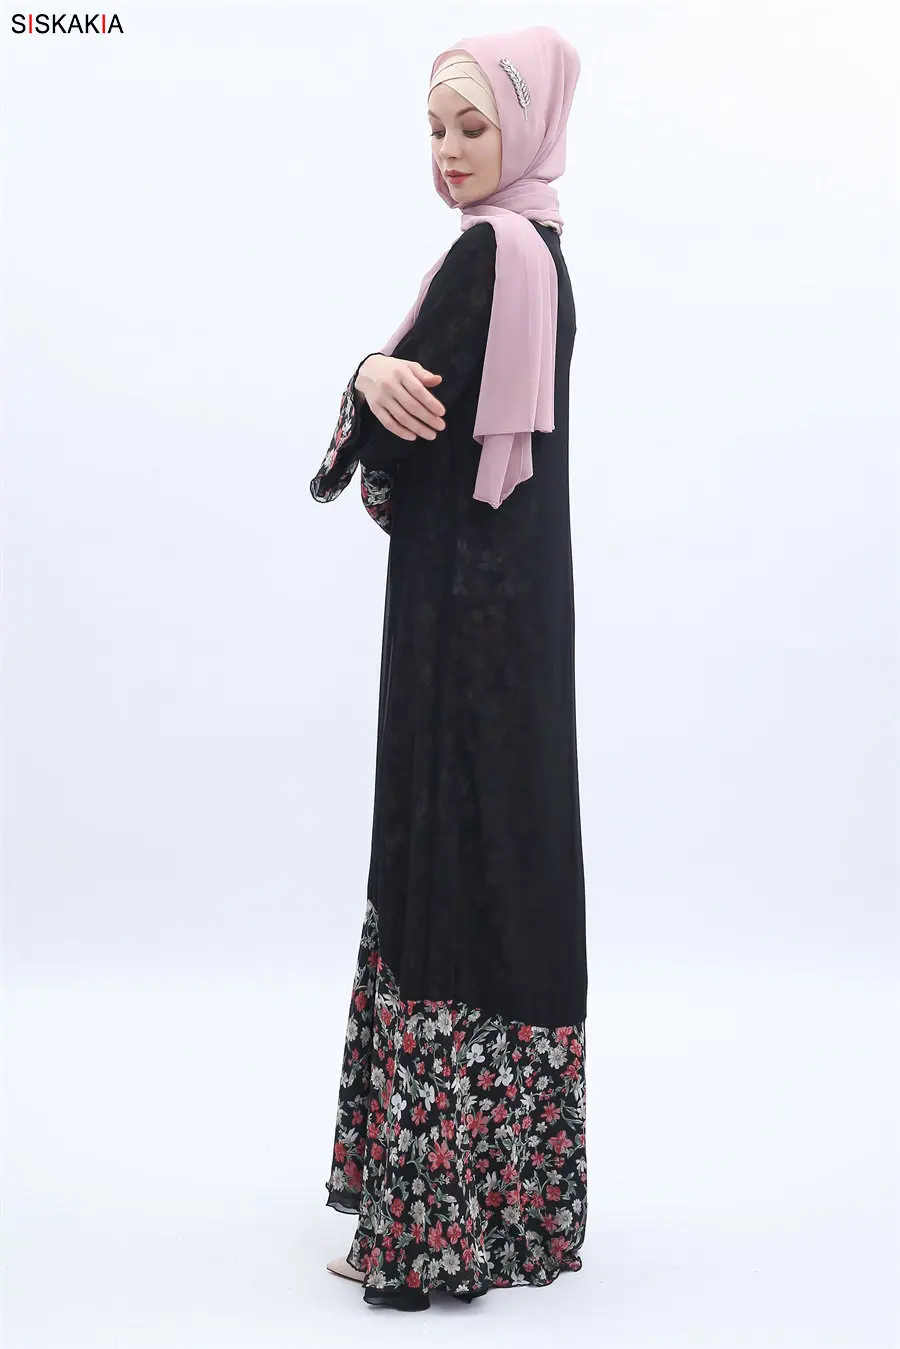 Женское шифоновое платье Siskakia, длинное платье лоскутного покроя с цветочным рисунком, черное платье из двустороннего материала, с